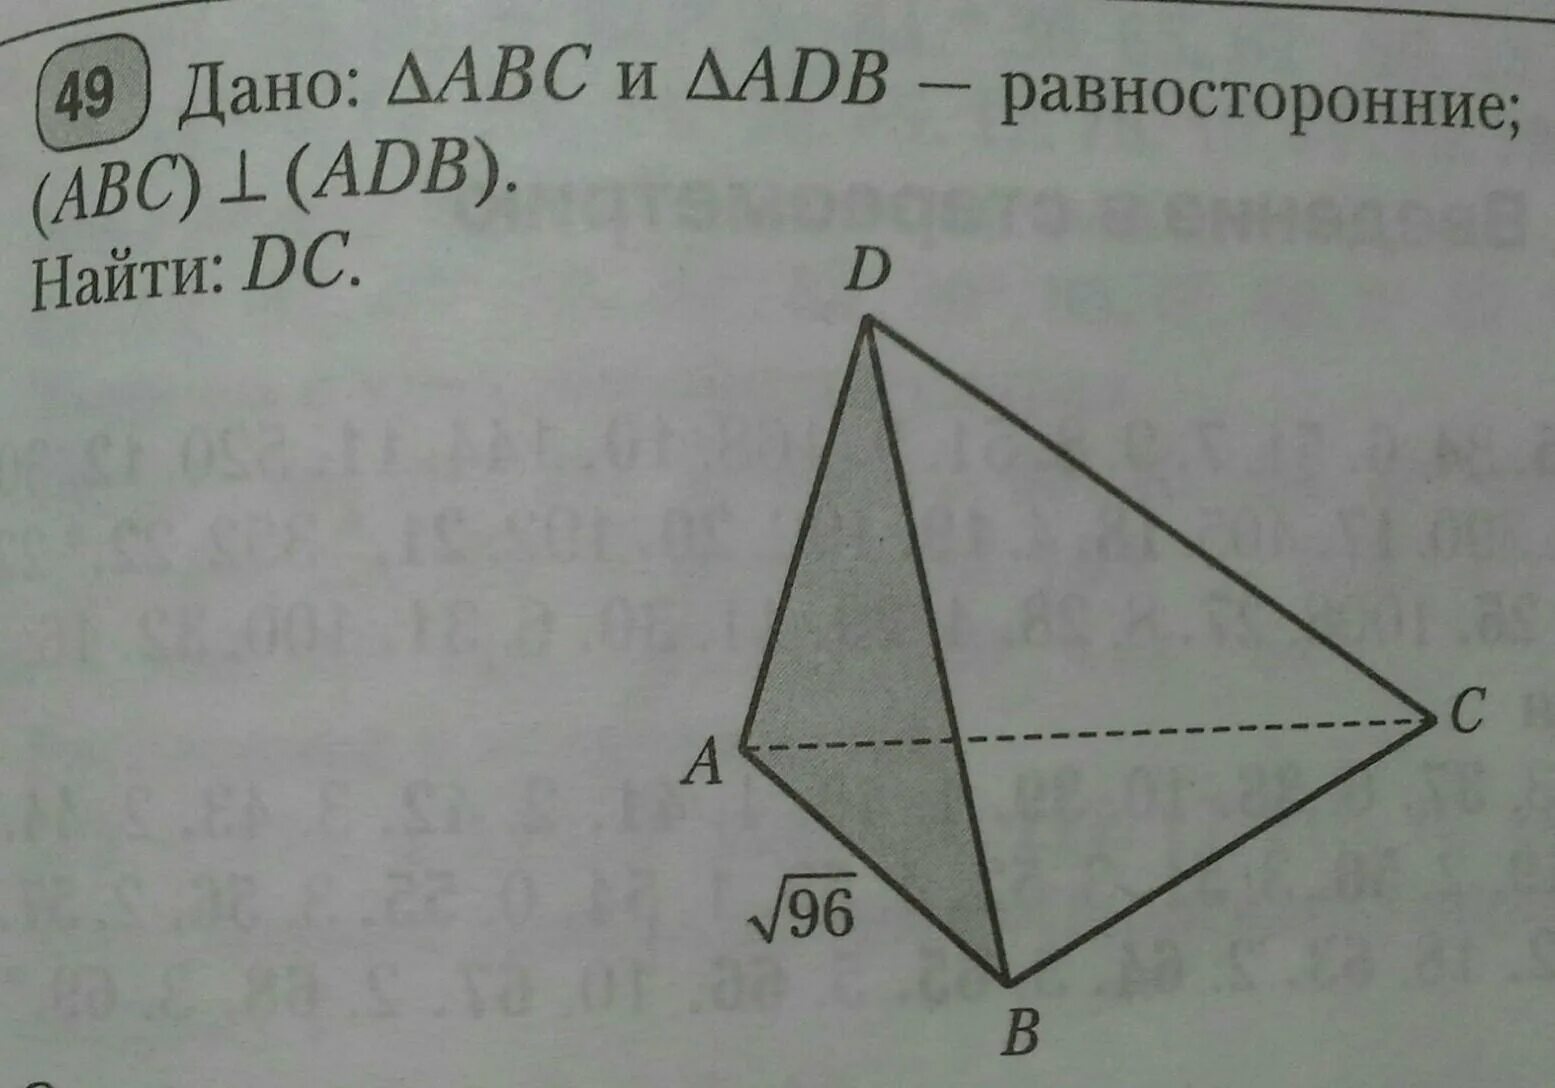 Прямая вк перпендикулярна плоскости равностороннего треугольника. А перпендикулярно АВС треугольник АВС равносторонний АС=4 корня 3 о. Смежные треугольники ADB И ABC. Треугольник АВС равносторонний найти АО ое. А перпендикулярно (ABC) найти Mr.